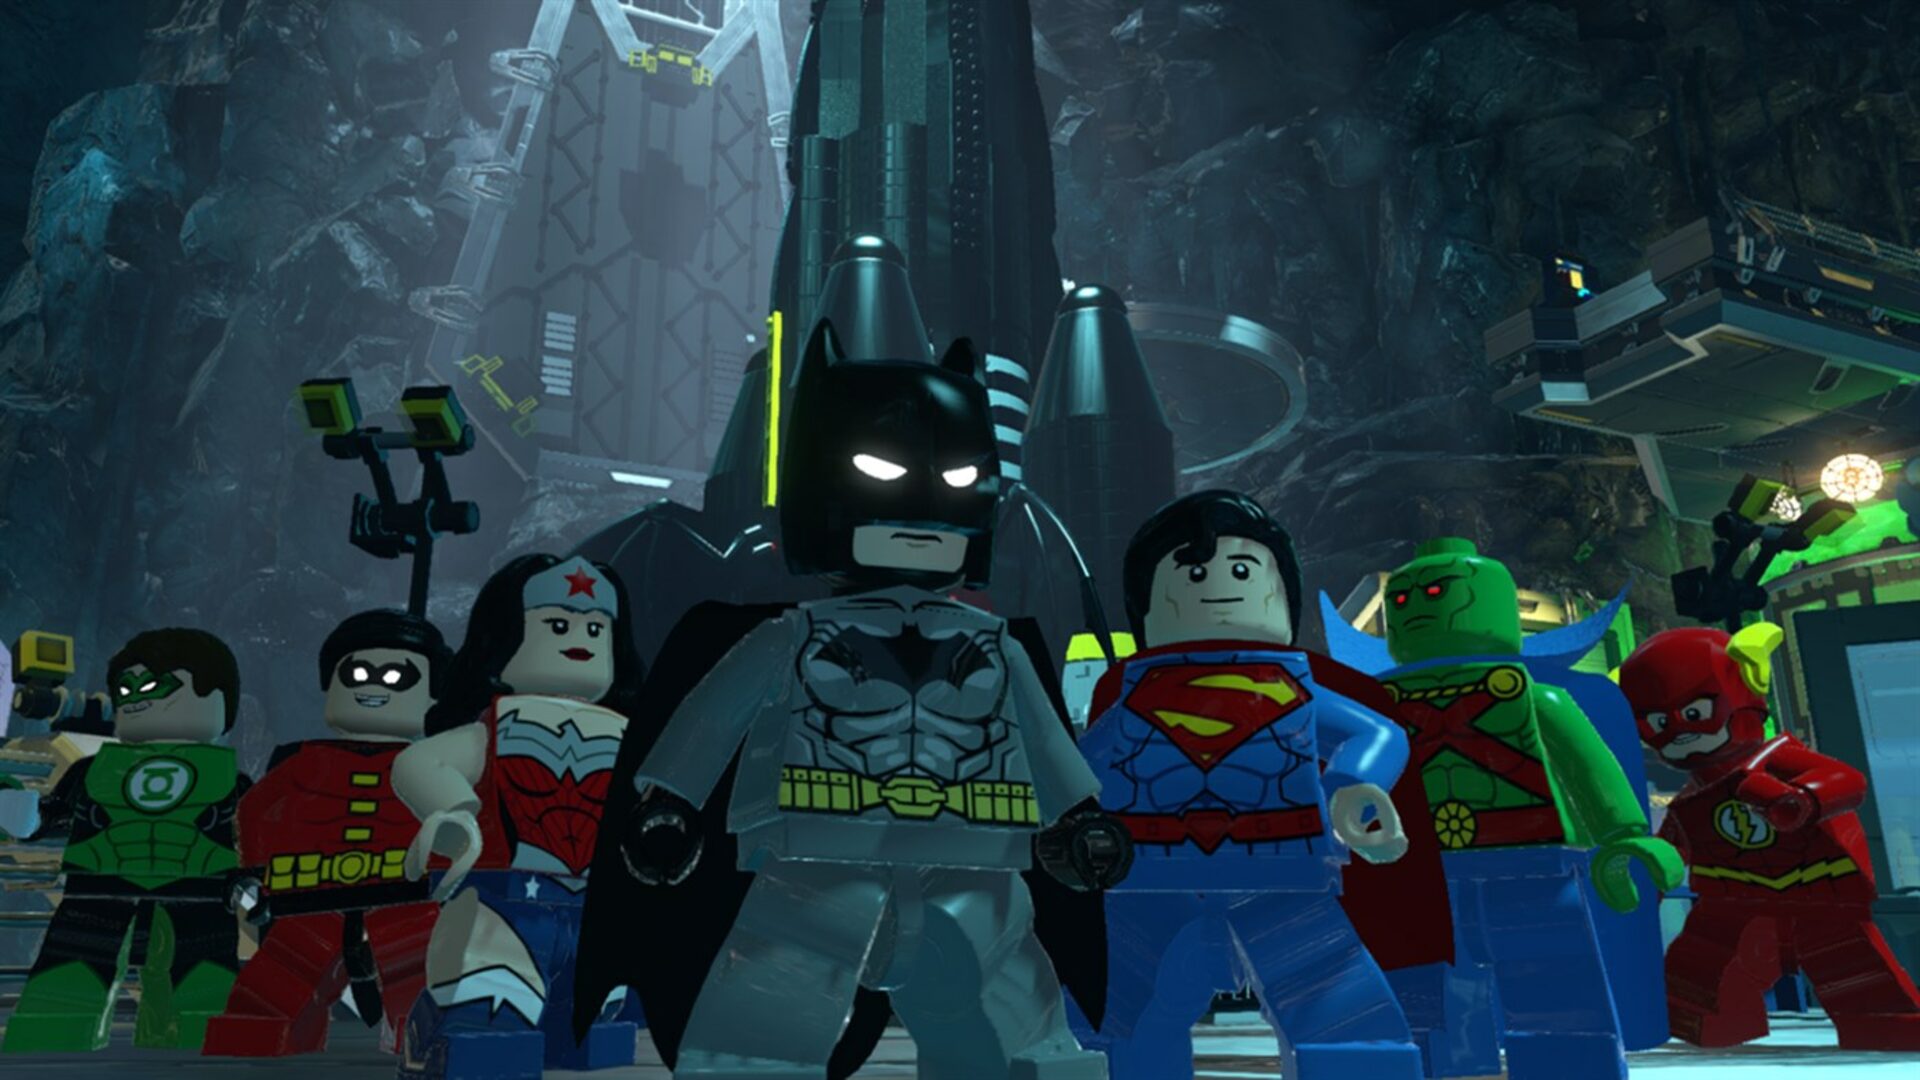 Lego Batman 3 Além De Gotham Deluxe Xbox - 25 Díg.(envio Já)